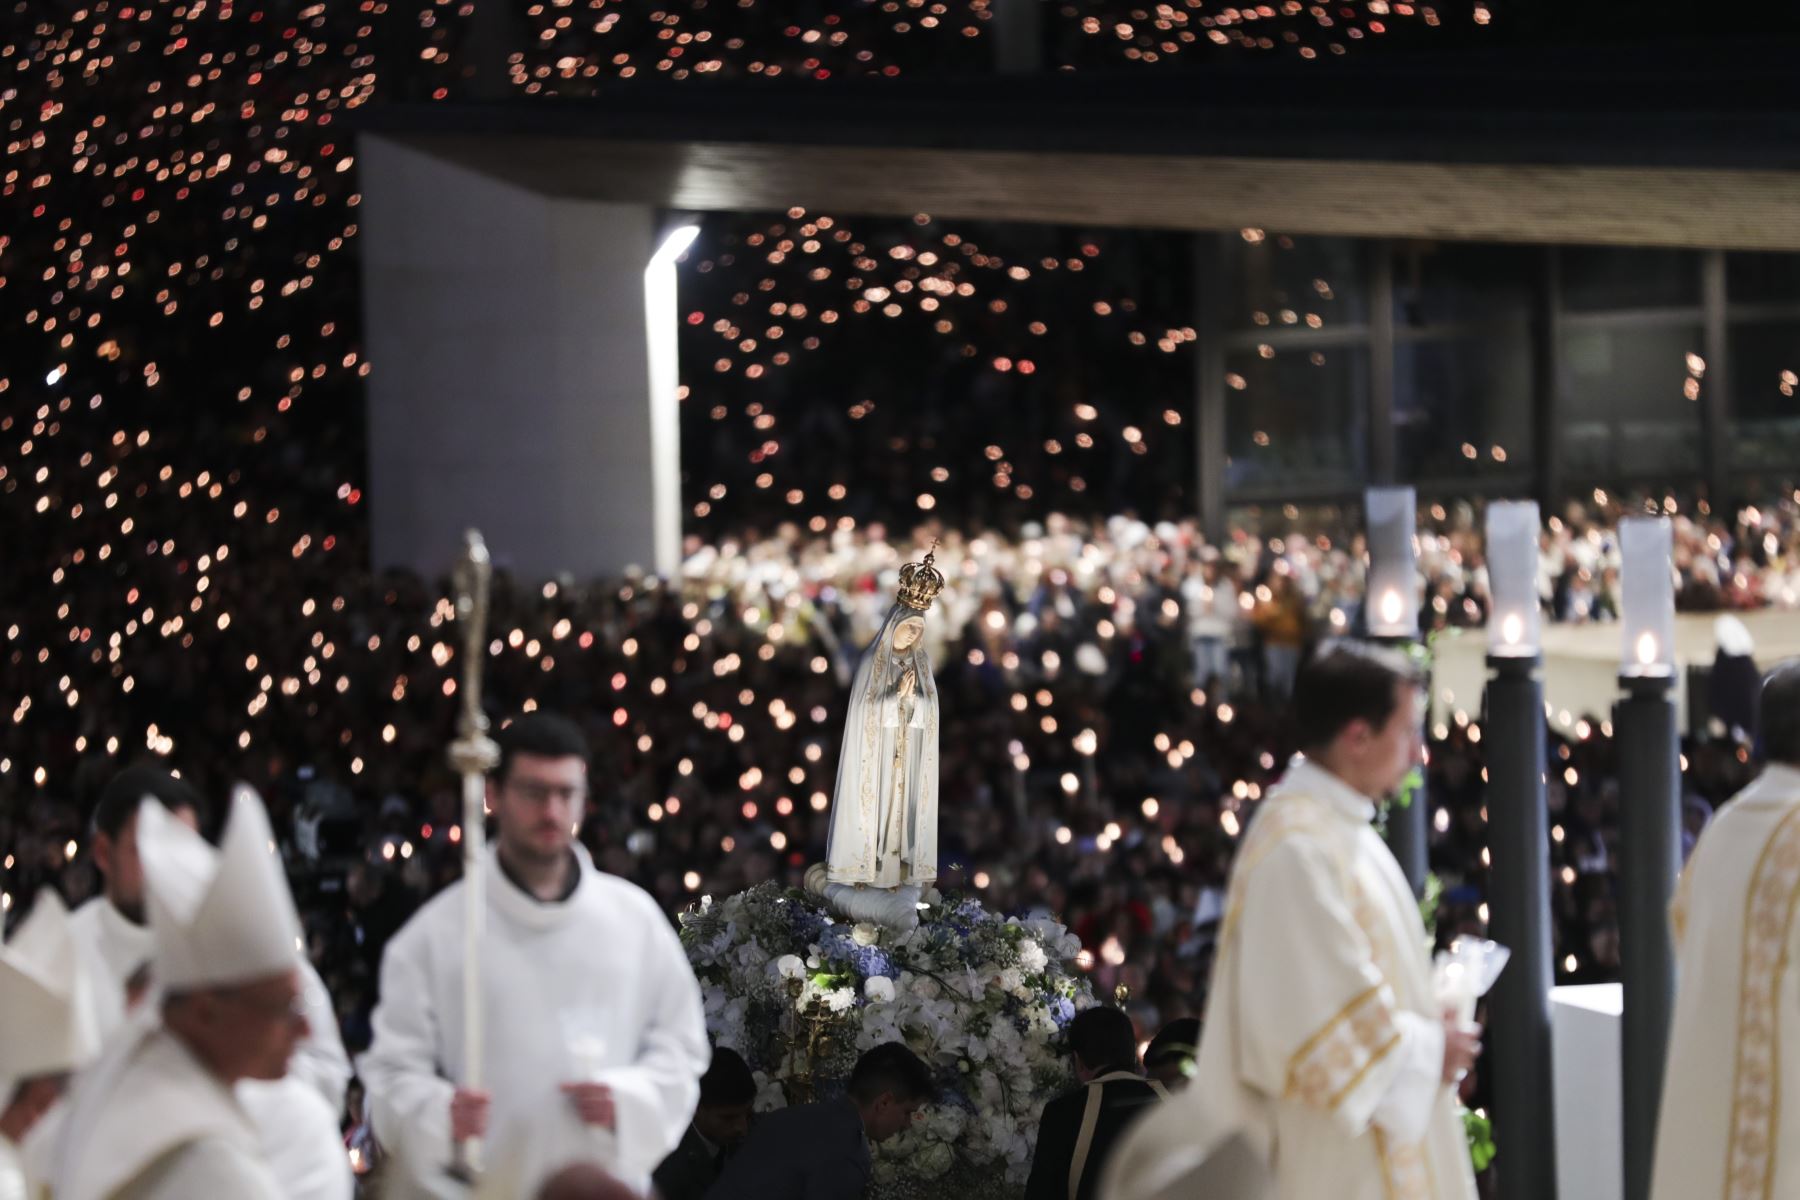 La imagen de Nuestra Señora de Fátima es transportada durante la procesión con velas de la peregrinación del 13 de mayo al Santuario de Fátima, Portugal. Foto: EFE